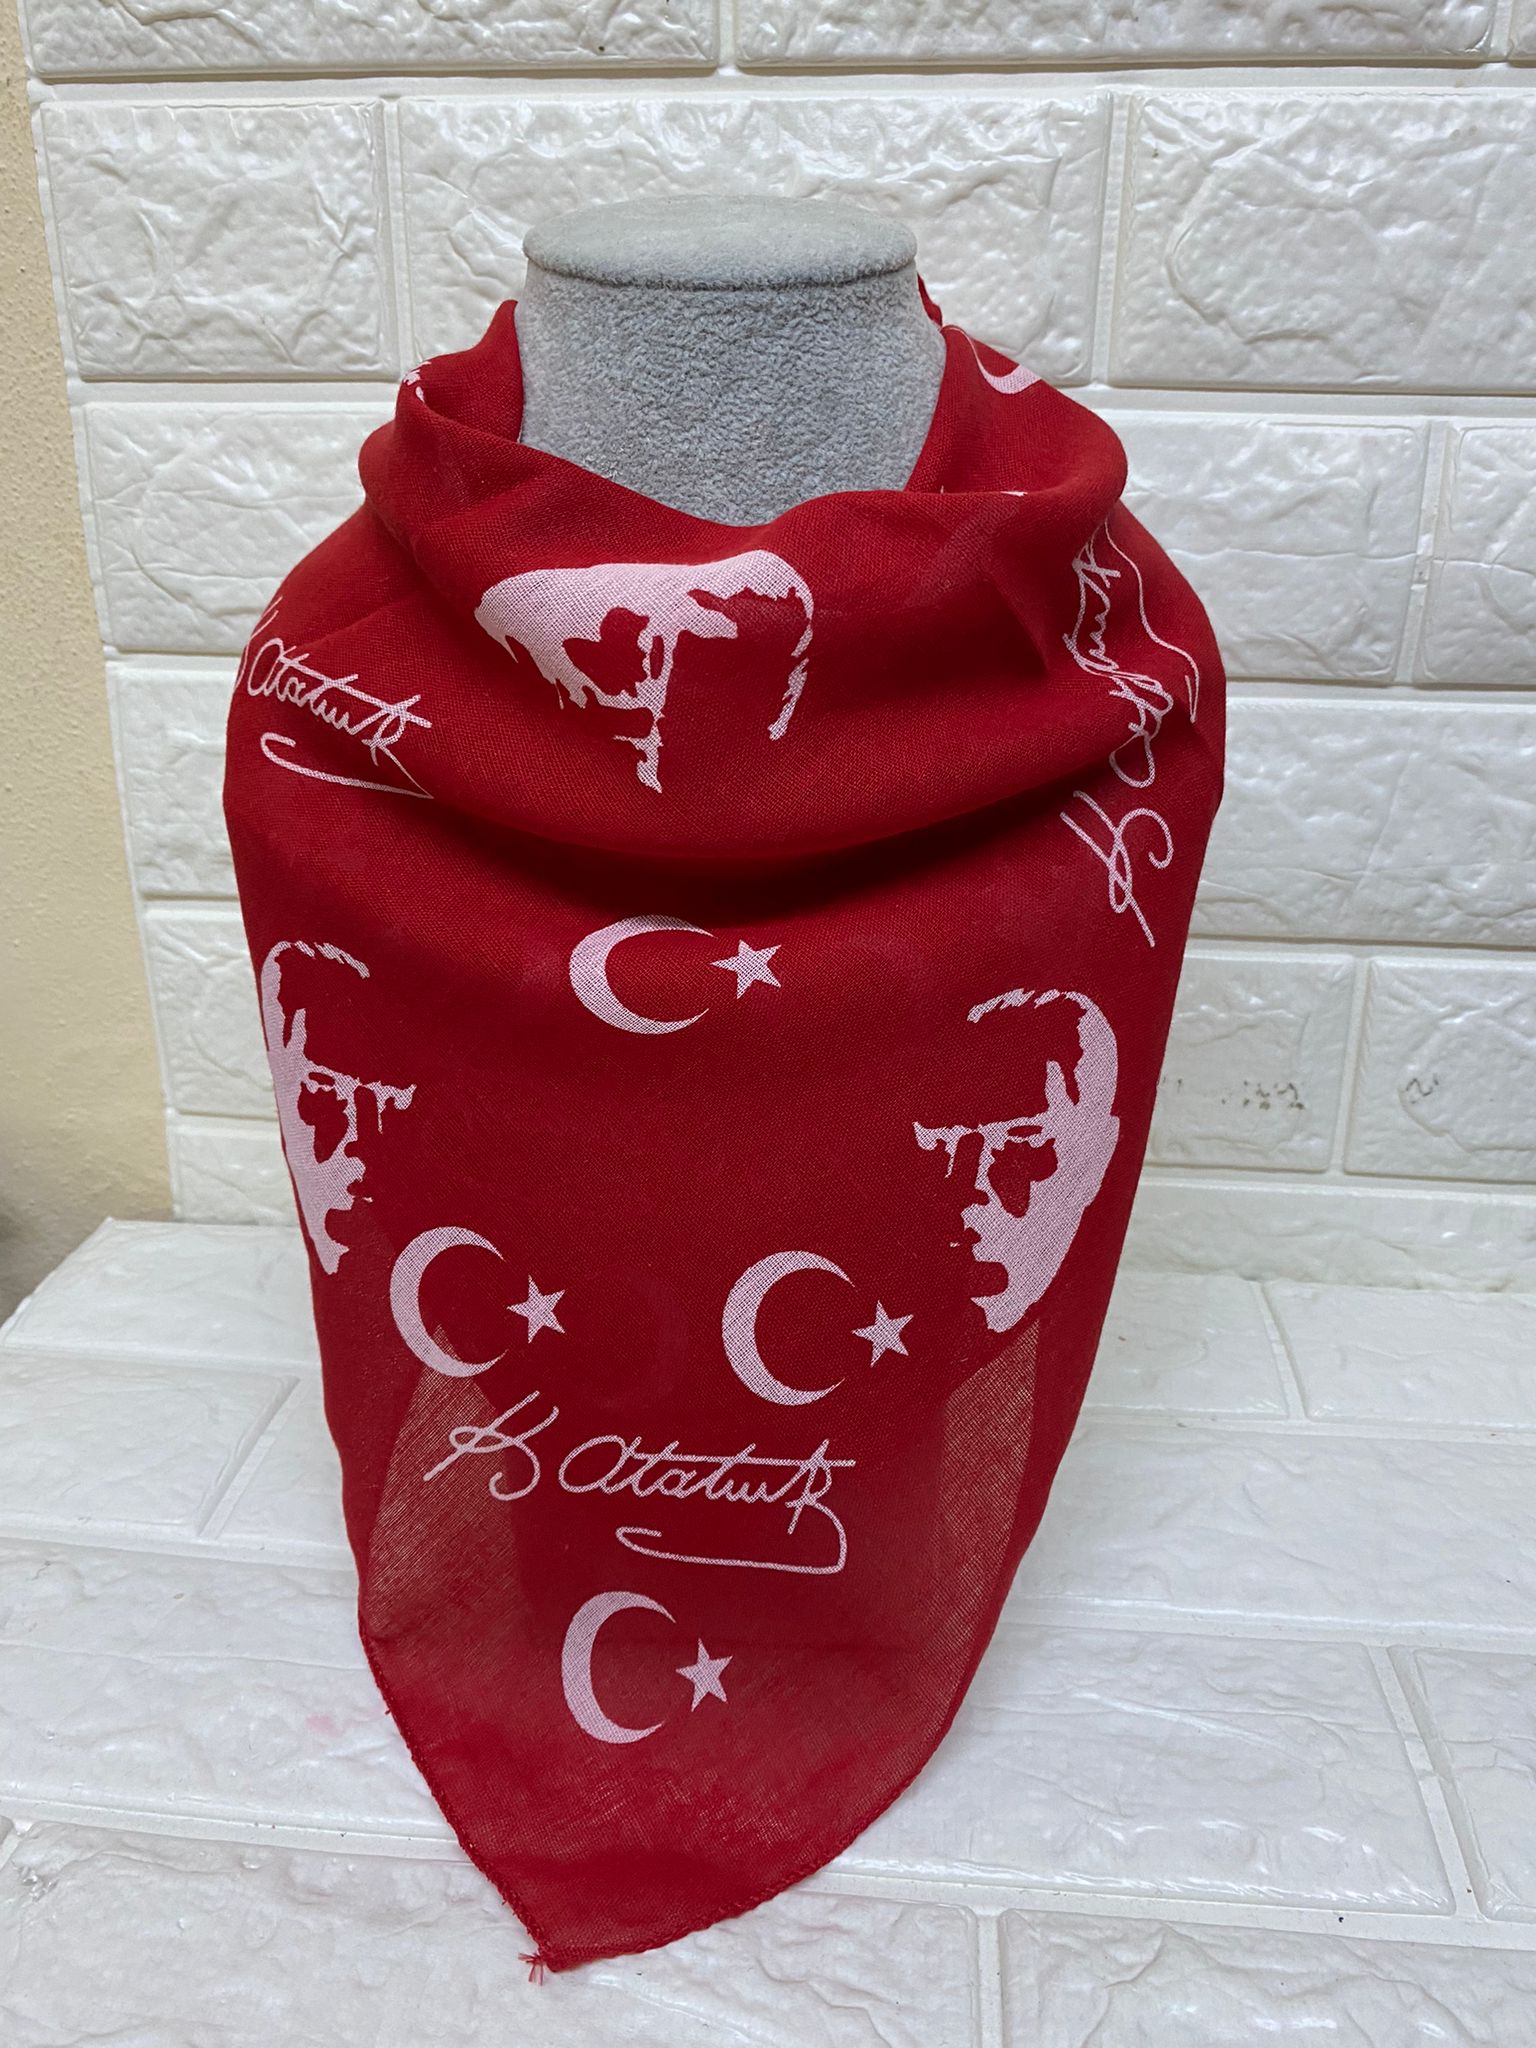 10 Adet 100. Yıla Özel Kırmızı Ay Yıldız Ve Atatürk Silüetli Imzalı Fular - 23 Nisan, 29 Ekim, 19 Mayıs